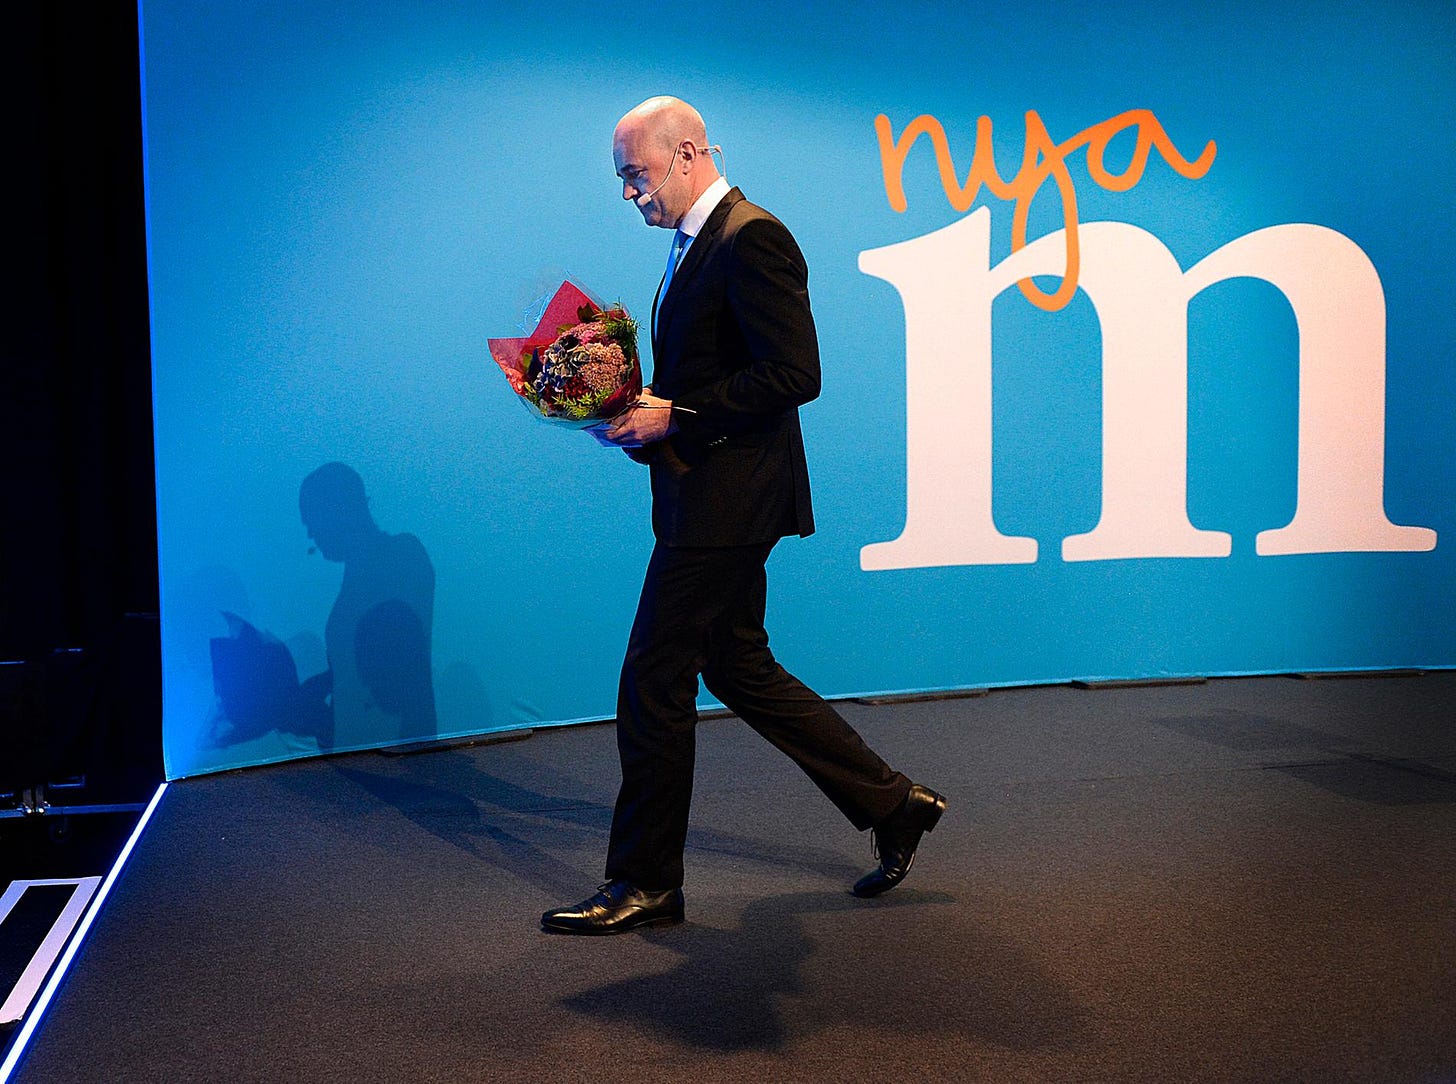 En strateg kastar in handduken. På valnatten den 14 september meddelade Fredrik Reinfeldt att han avgår som både statsminister och partiledare. Efter 23 år i riksdagen, elva år som partiledare och åtta år som statsminister. Det senare är svenskt rekord sedan Sverige blev en demokrati.